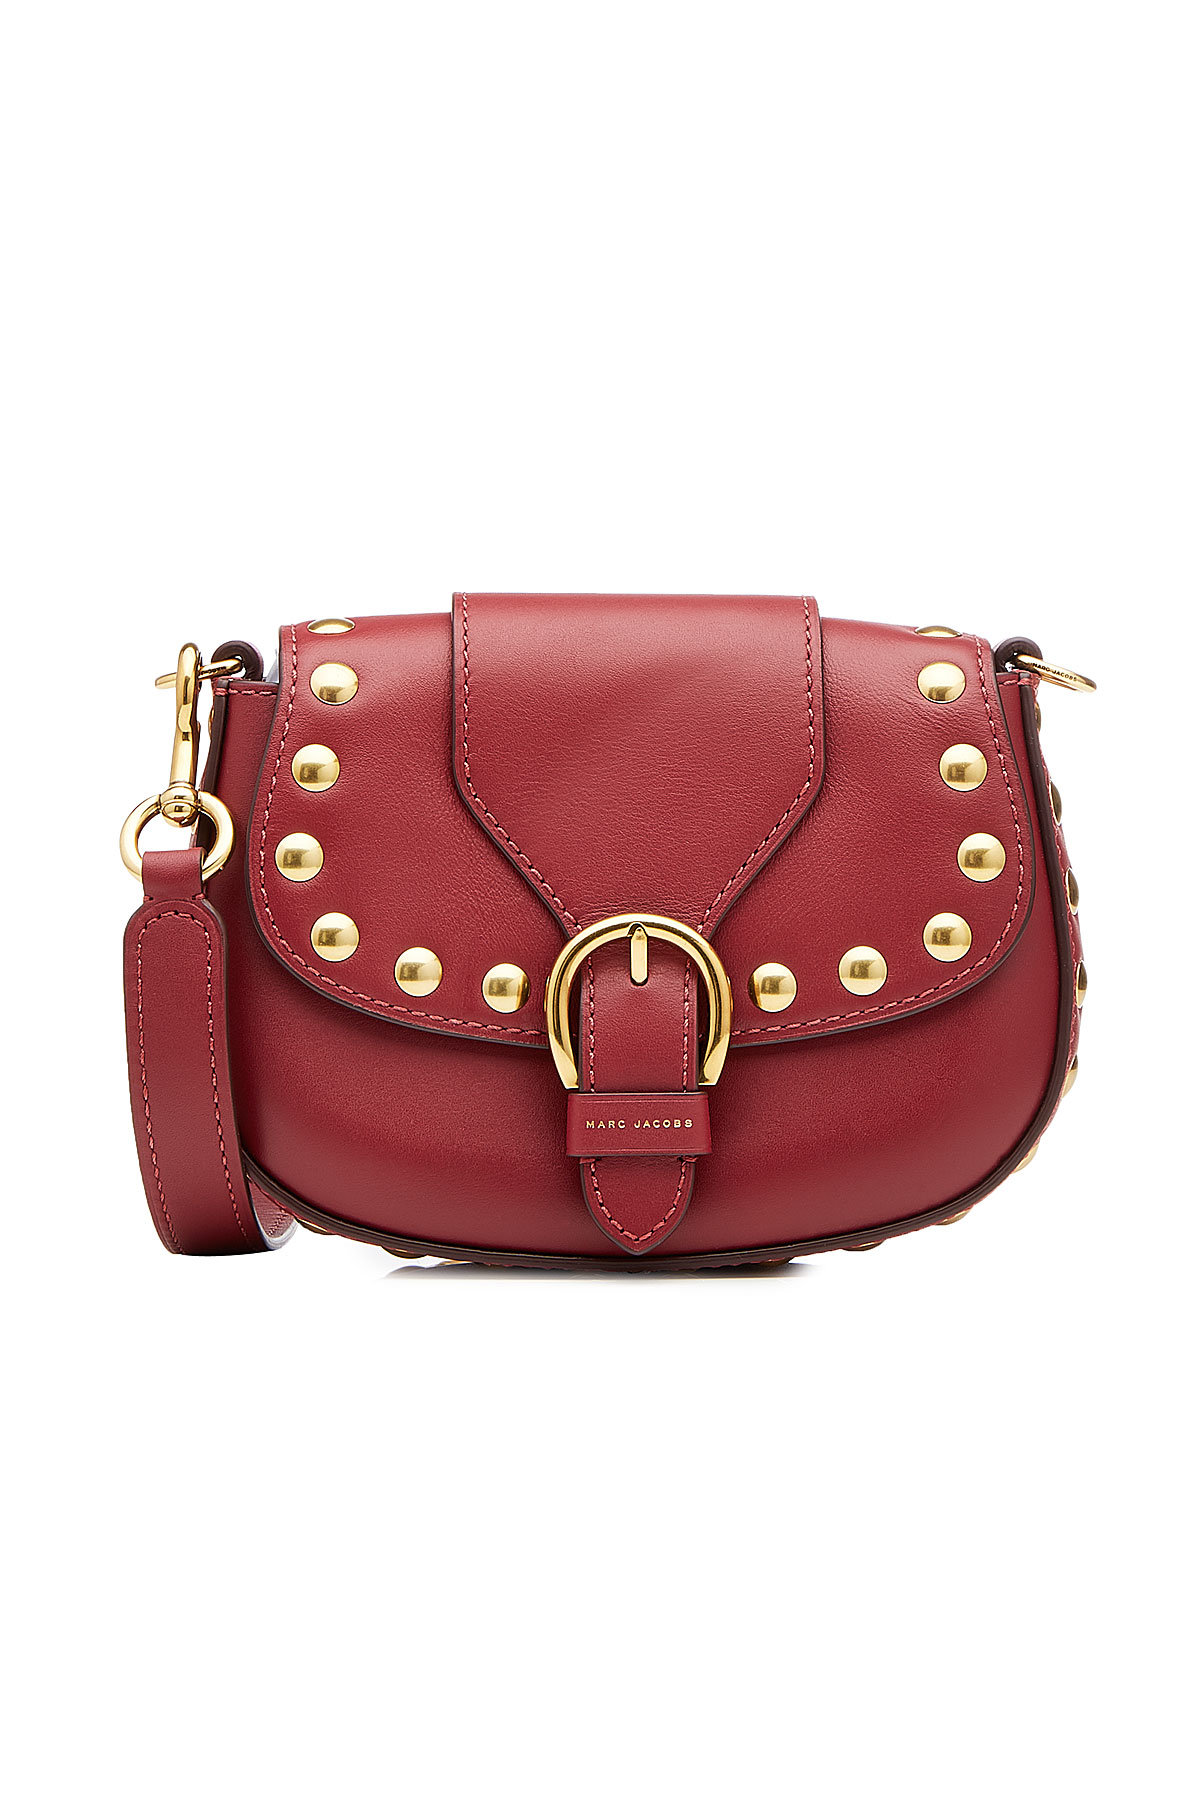 Marc Jacobs - Navigator Small Embellished Leather Shoulder Bag